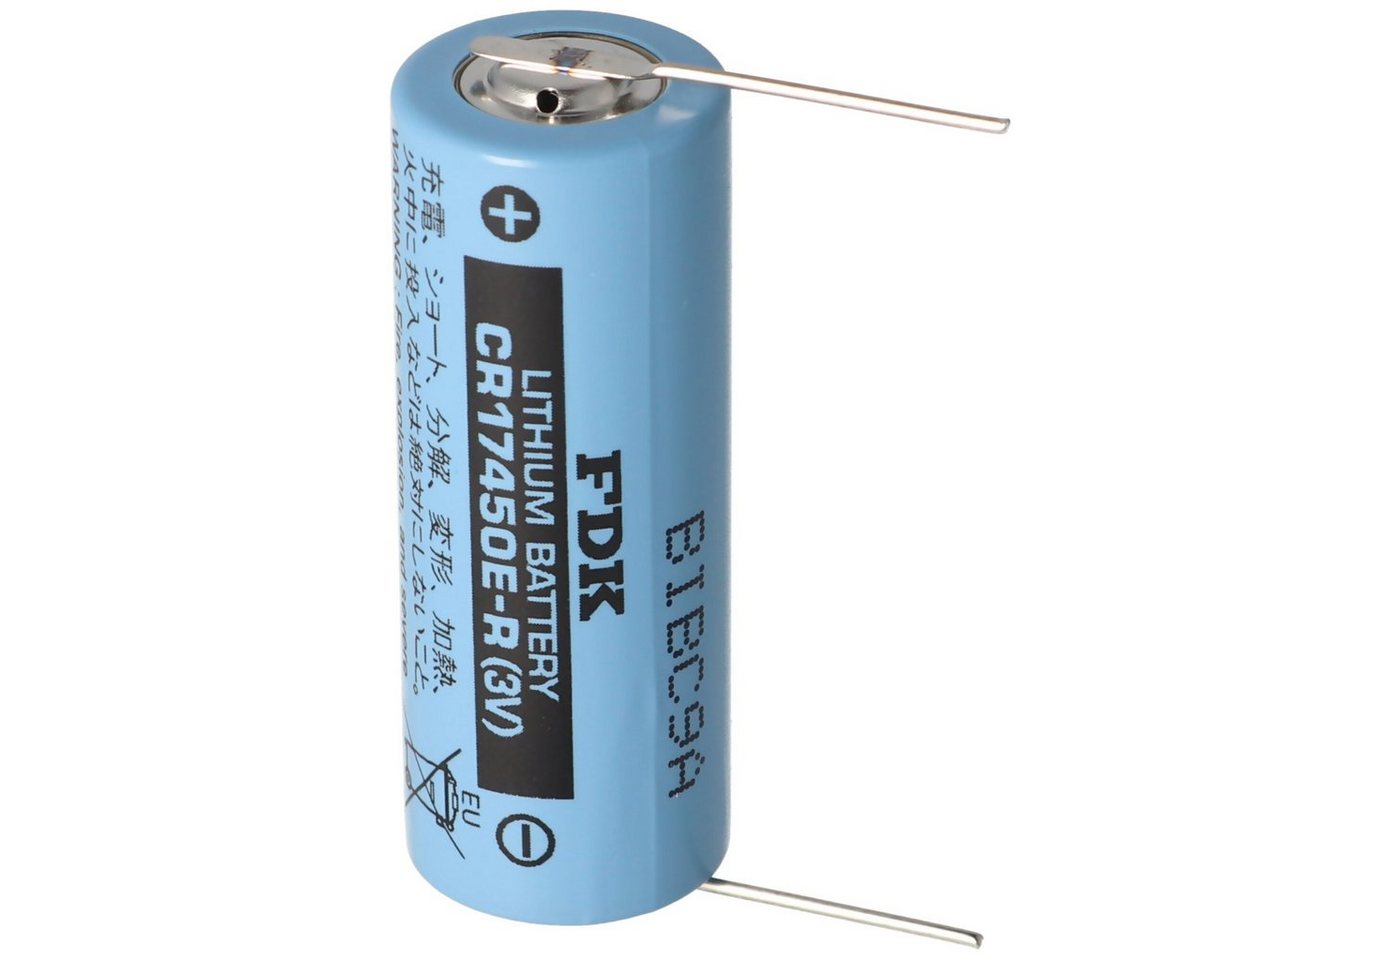 Sanyo Sanyo Lithium Batterie CR17450E-R Size A, Lötdraht (Lötpaddel) von FD Batterie, (3,0 V) von Sanyo